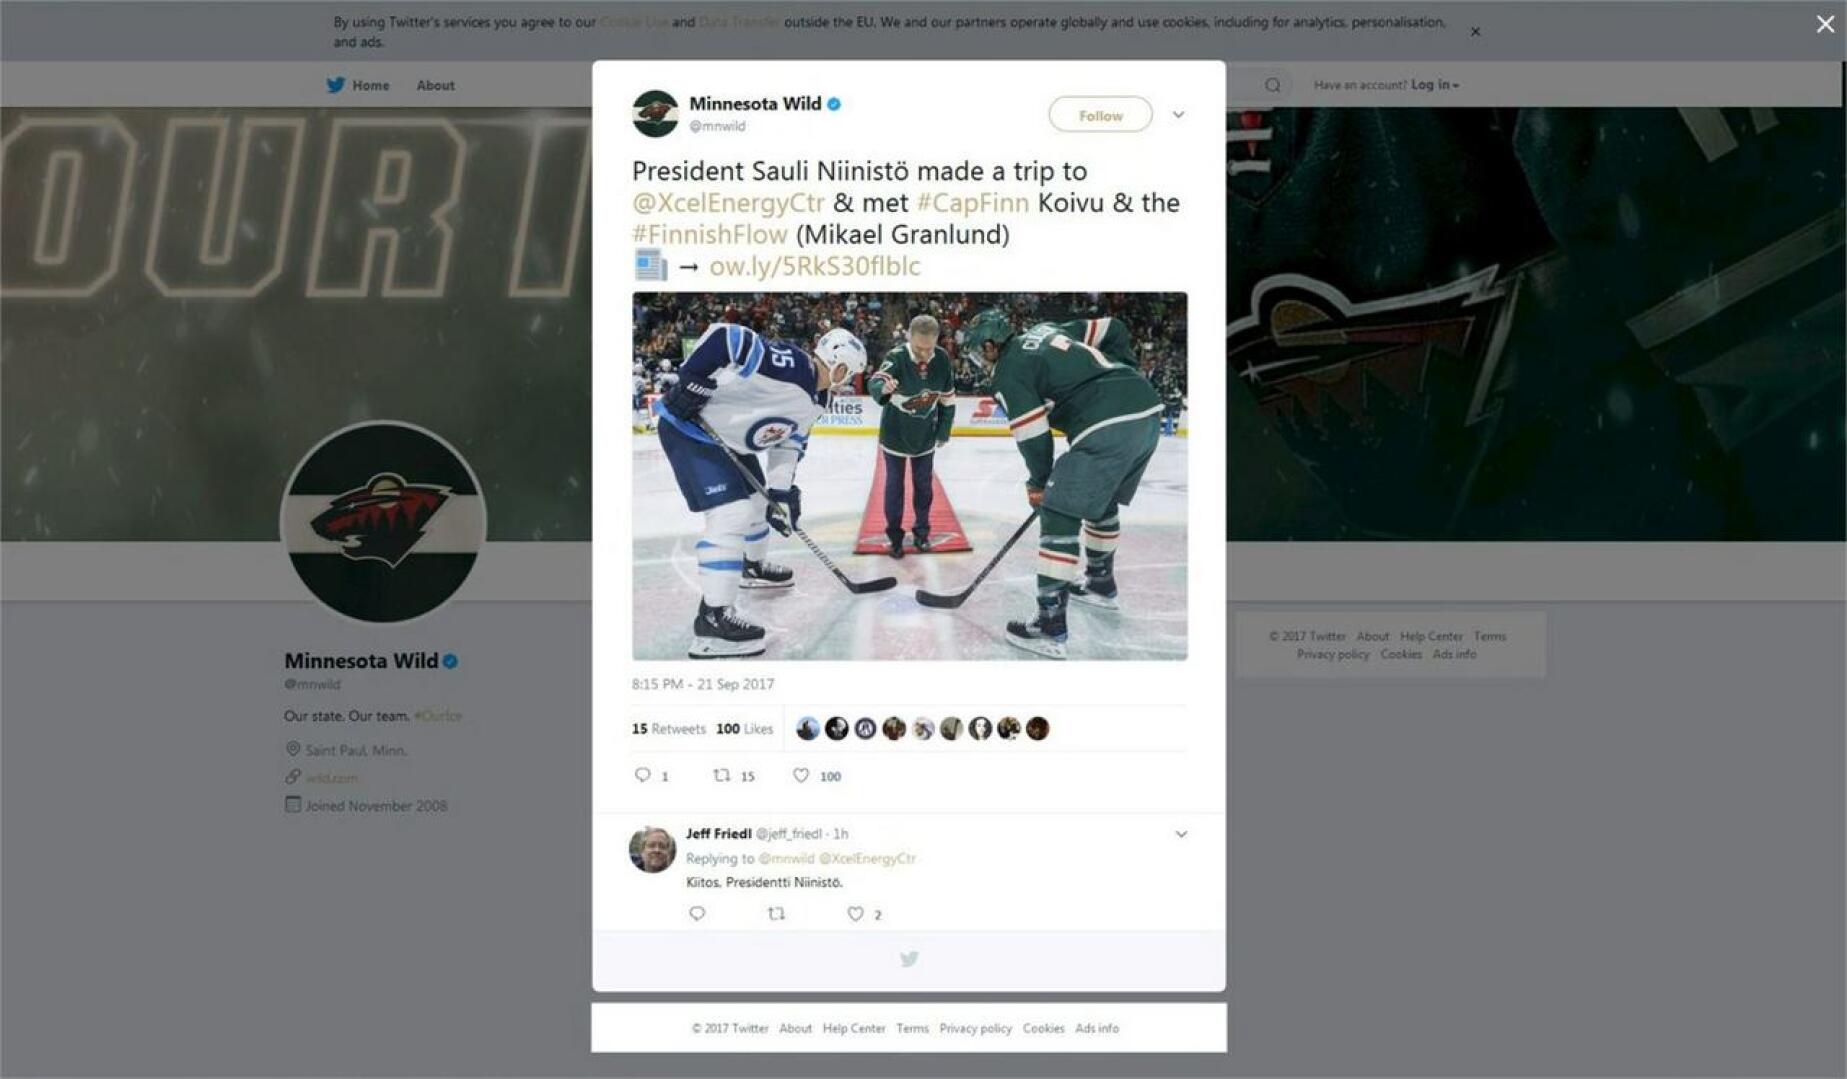 Minnesota julkaisi tilanteesta kuvan Twitter-tilillään.